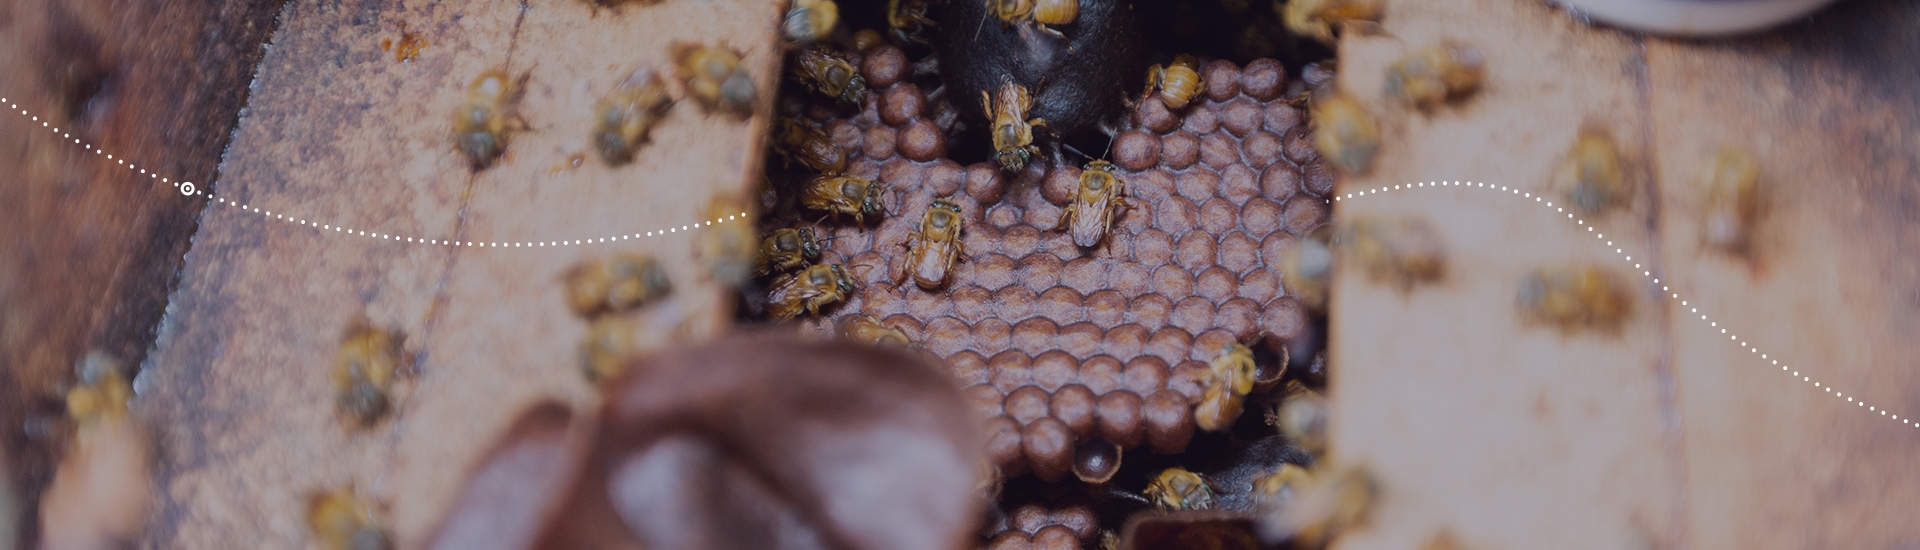 Criação de abelhas sem ferrão